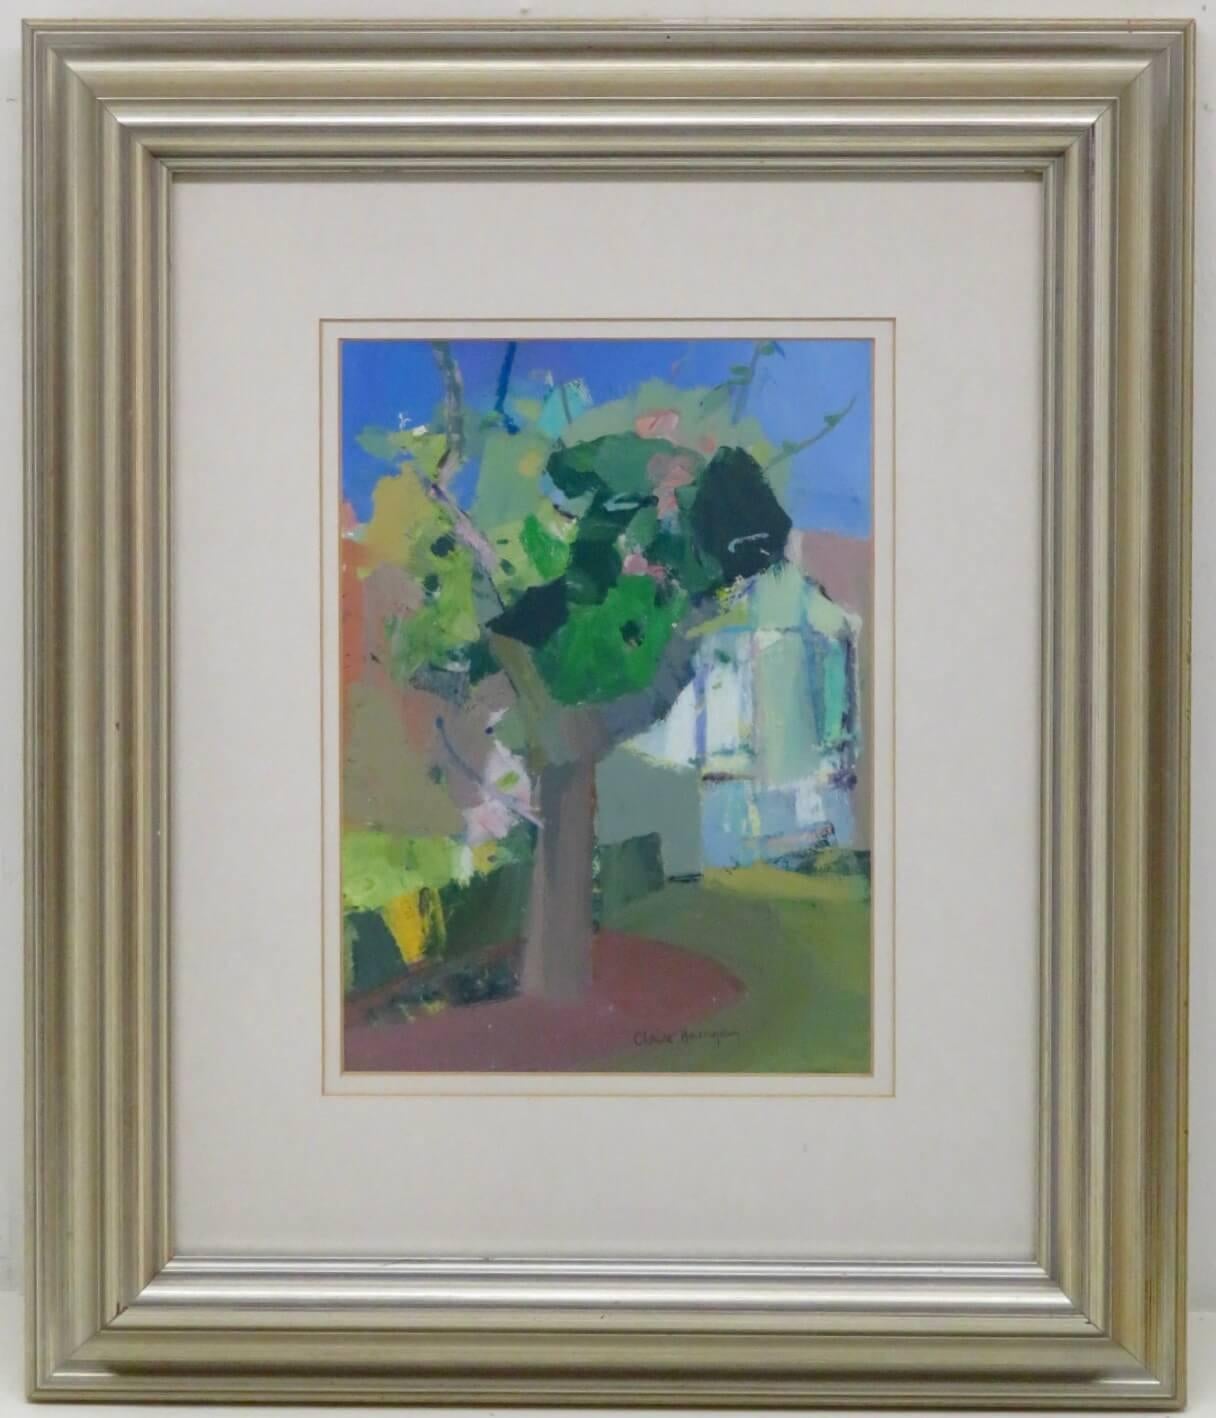 ARTIST : Claire Harrigan RSW (1964-) Écossaise
TITRE :  "Greenhouse And Apple Blossom" (1989)
SIGNÉ : en bas à droite et étiqueté au verso
MOYEN :  pastel à l'huile et acrylique sur carton
TAILLE :  46cm x 38cm avec cadre 
CONDITION : excellent